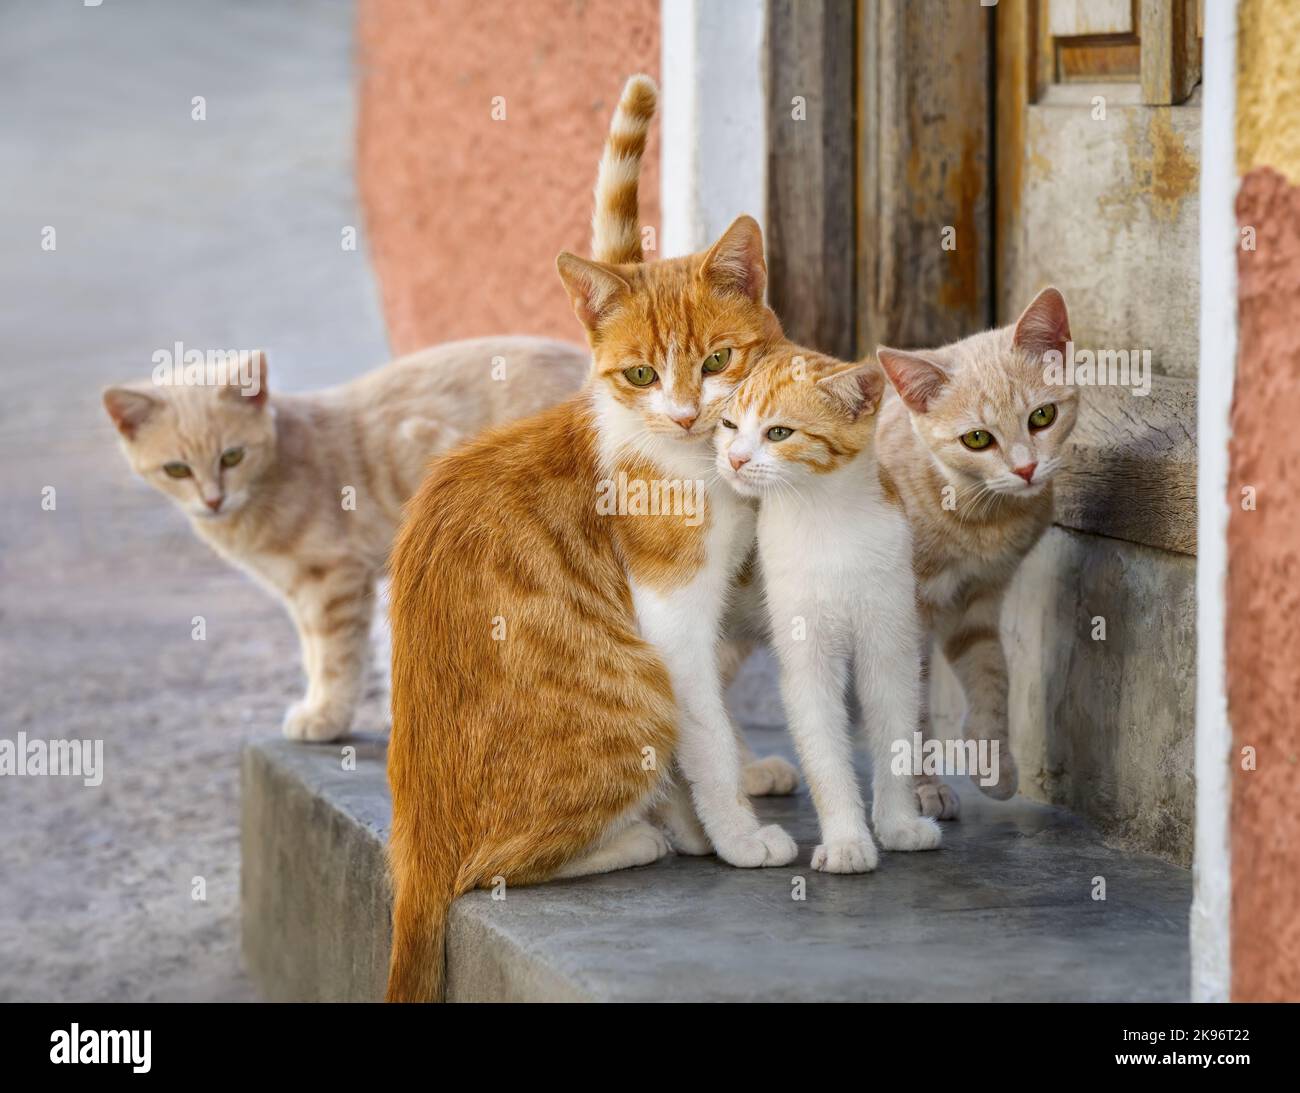 Carino gatto famiglia in posa insieme di fronte a una casa porta d'ingresso, gatti belli sfregando la testa contro l'altro, la Grecia, Europa Foto Stock